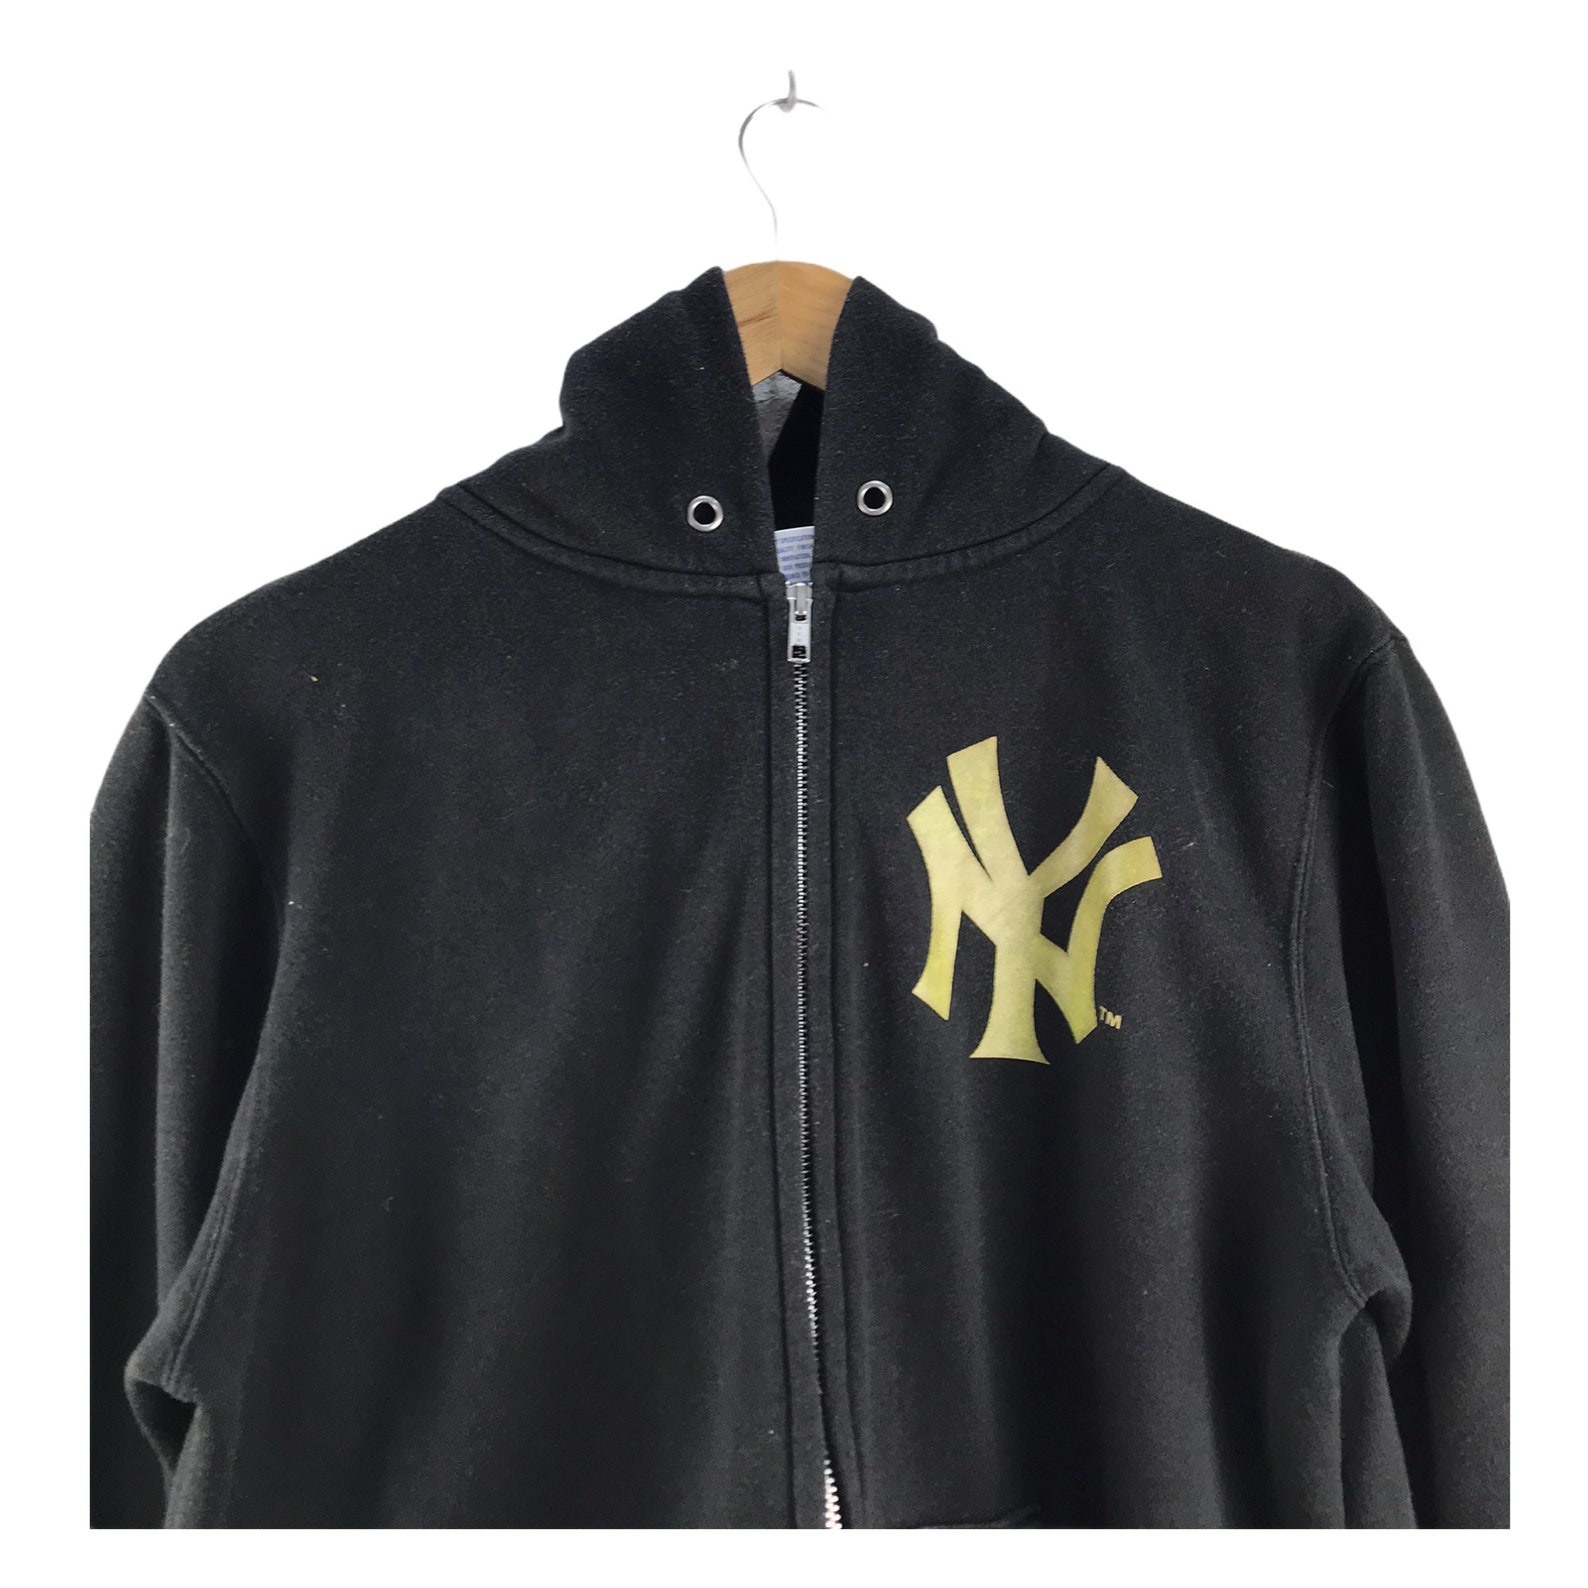 Vintage New York Yankees Hoodies Sweatshirt - Etsy UK